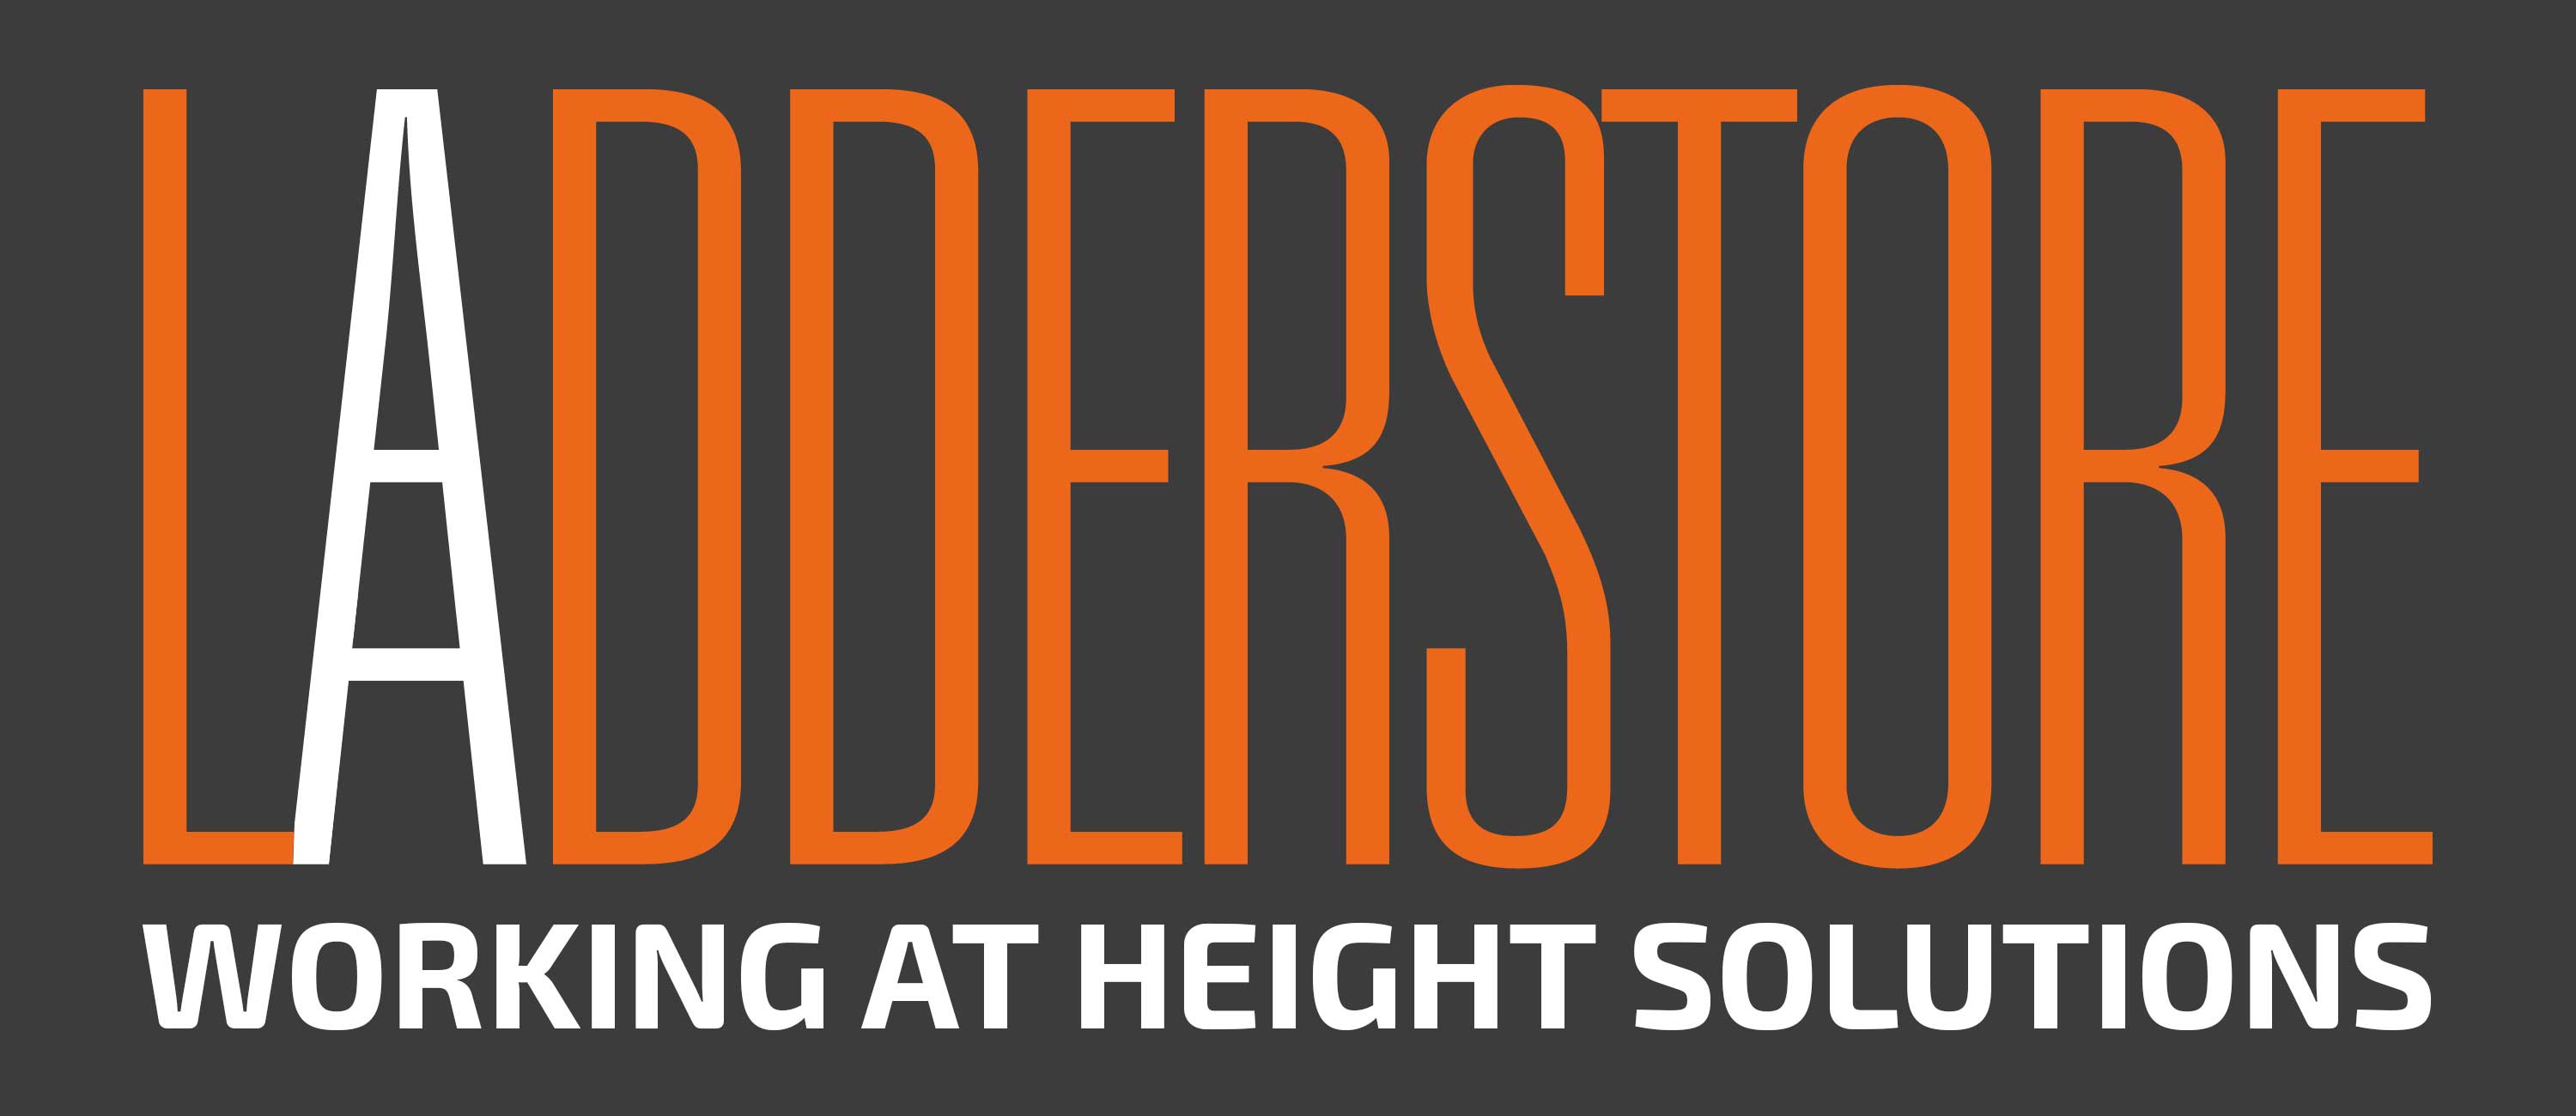 logo for Ladderstore